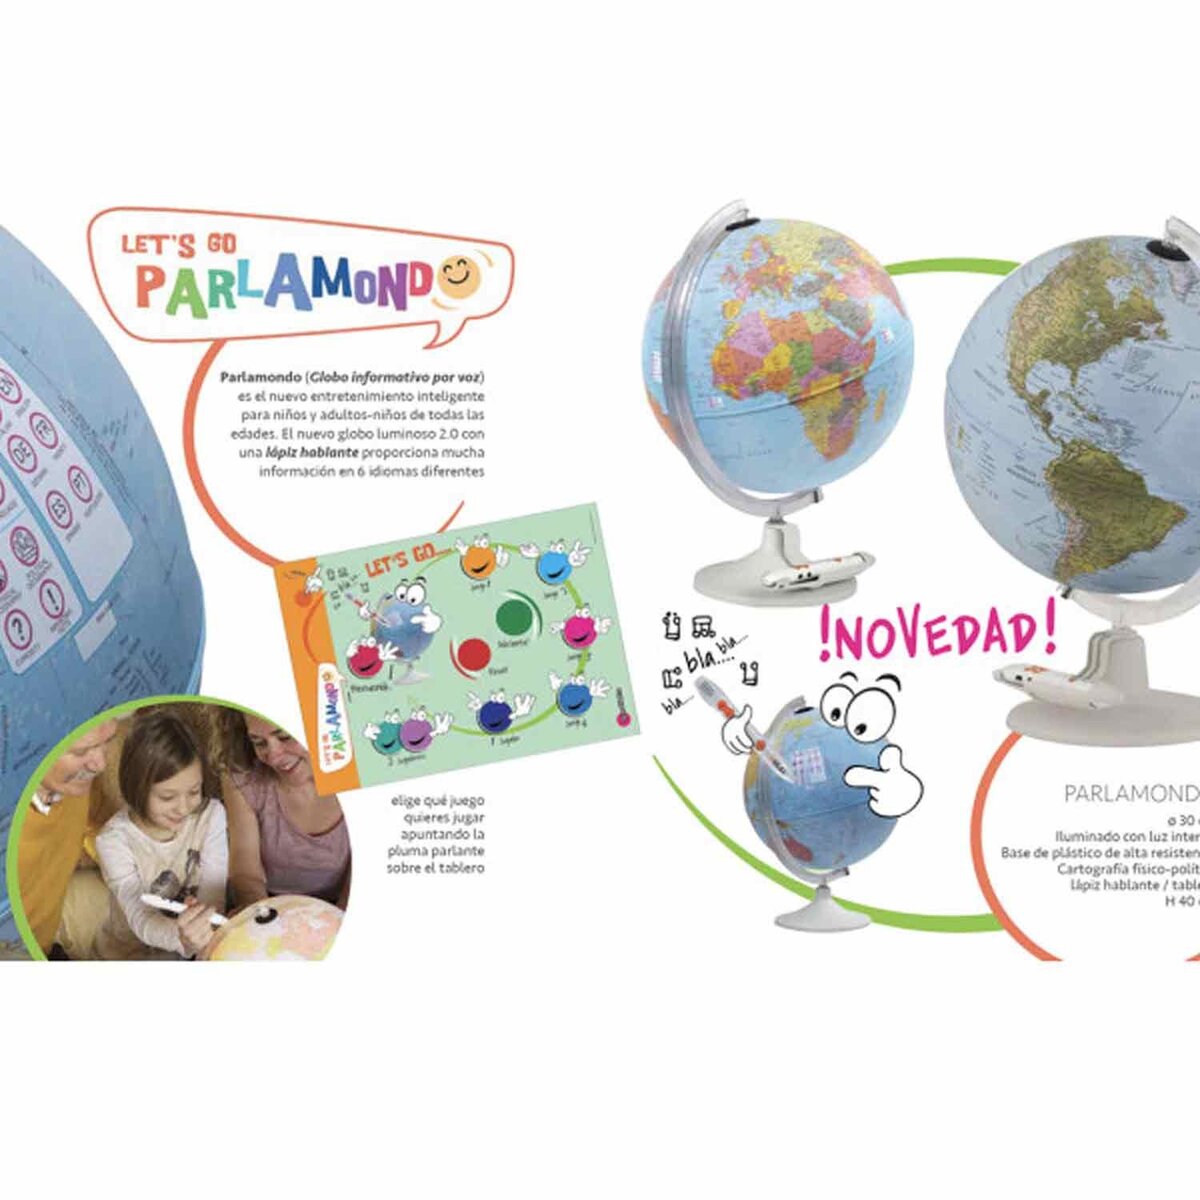 ORBIT GLOBES & MAPS Globe lumineux pour enfant de 25 cm avec animaux, pied  en plastique, avec pied en plastique rigide solide, image de carte  allemande avec de nombreuses illustrations pour les 